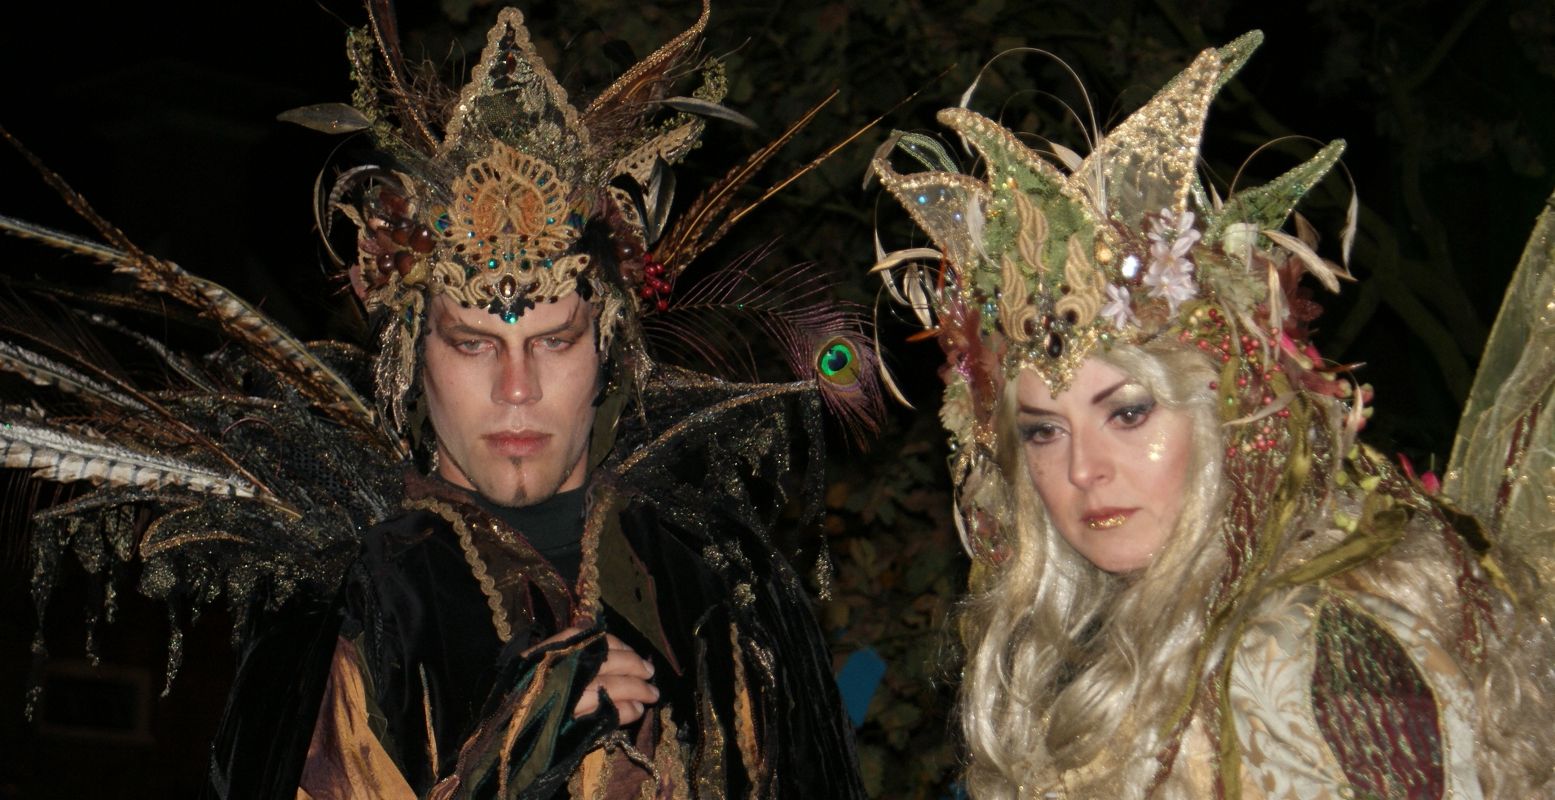 Veel bezoekers zijn prachtig verkleed tijdens de Samhain viering in Vesting Bourtange. Foto: Vesting Bourtange